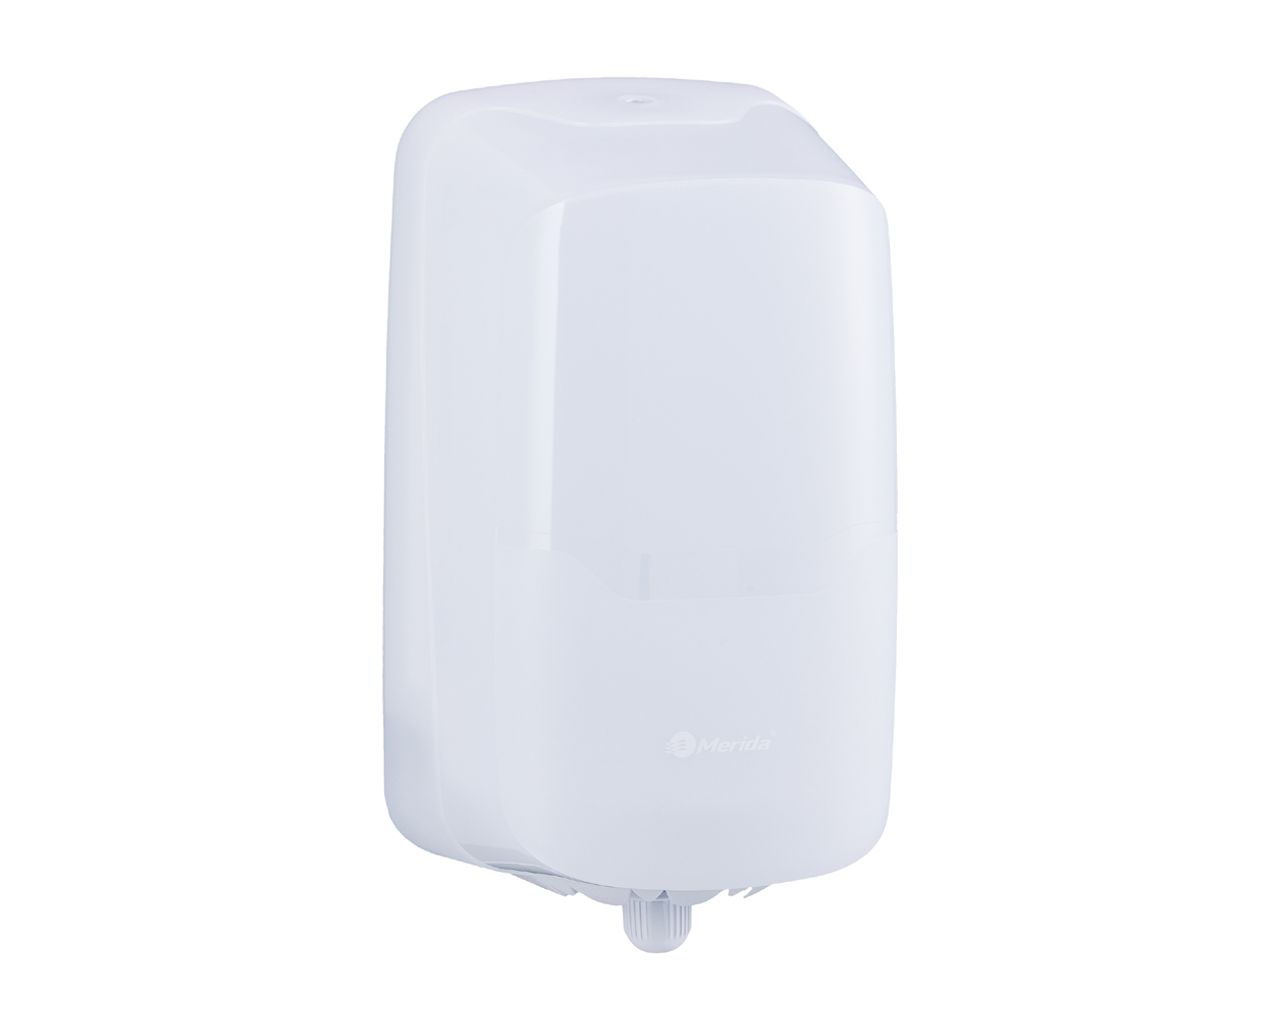 MERIDA HARMONY CENTER PULL toilet tissue or paper towel roll dispenser, plastic, white transparent